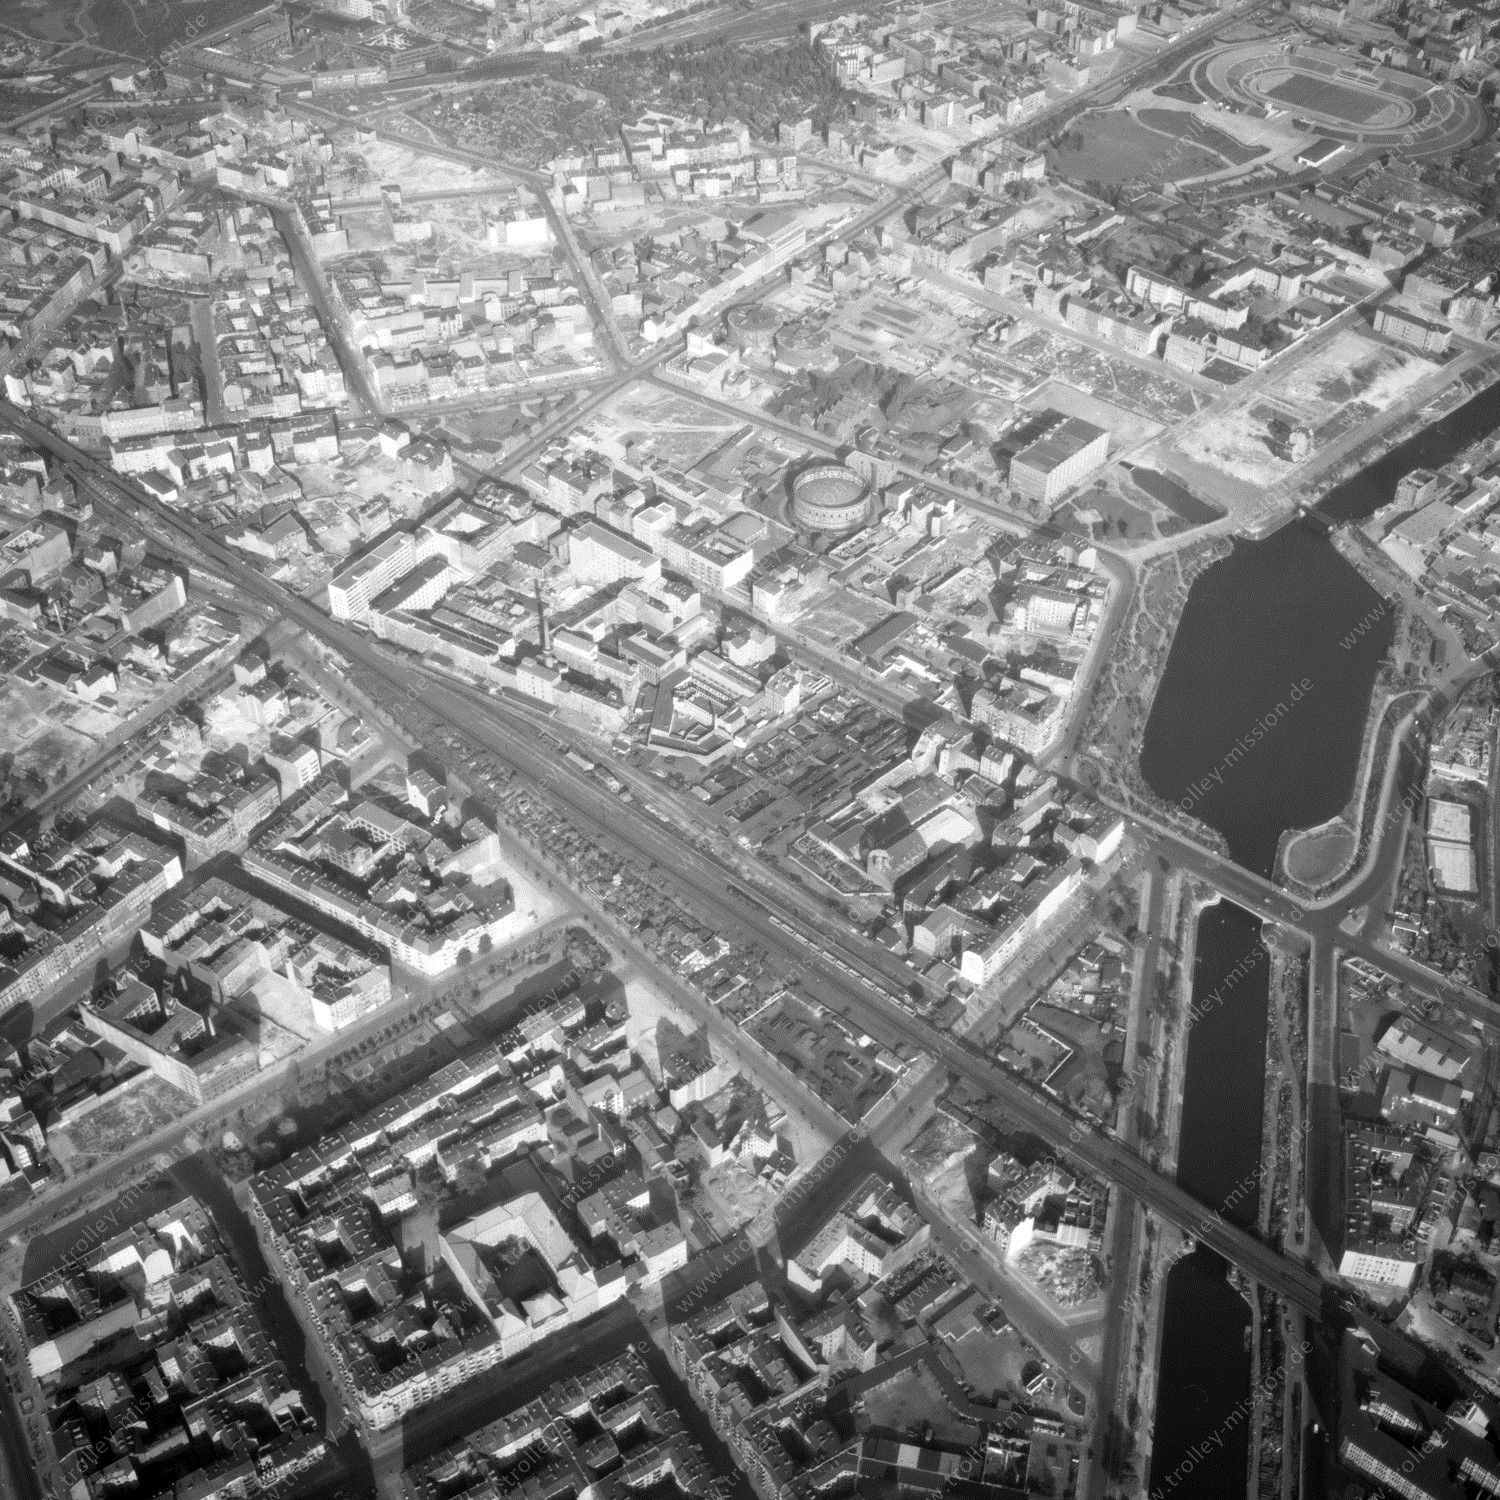 Alte Fotos und Luftbilder von Berlin - Luftbildaufnahme Nr. 06 - Historische Luftaufnahmen von West-Berlin aus dem Jahr 1954 - Flugstrecke Papa